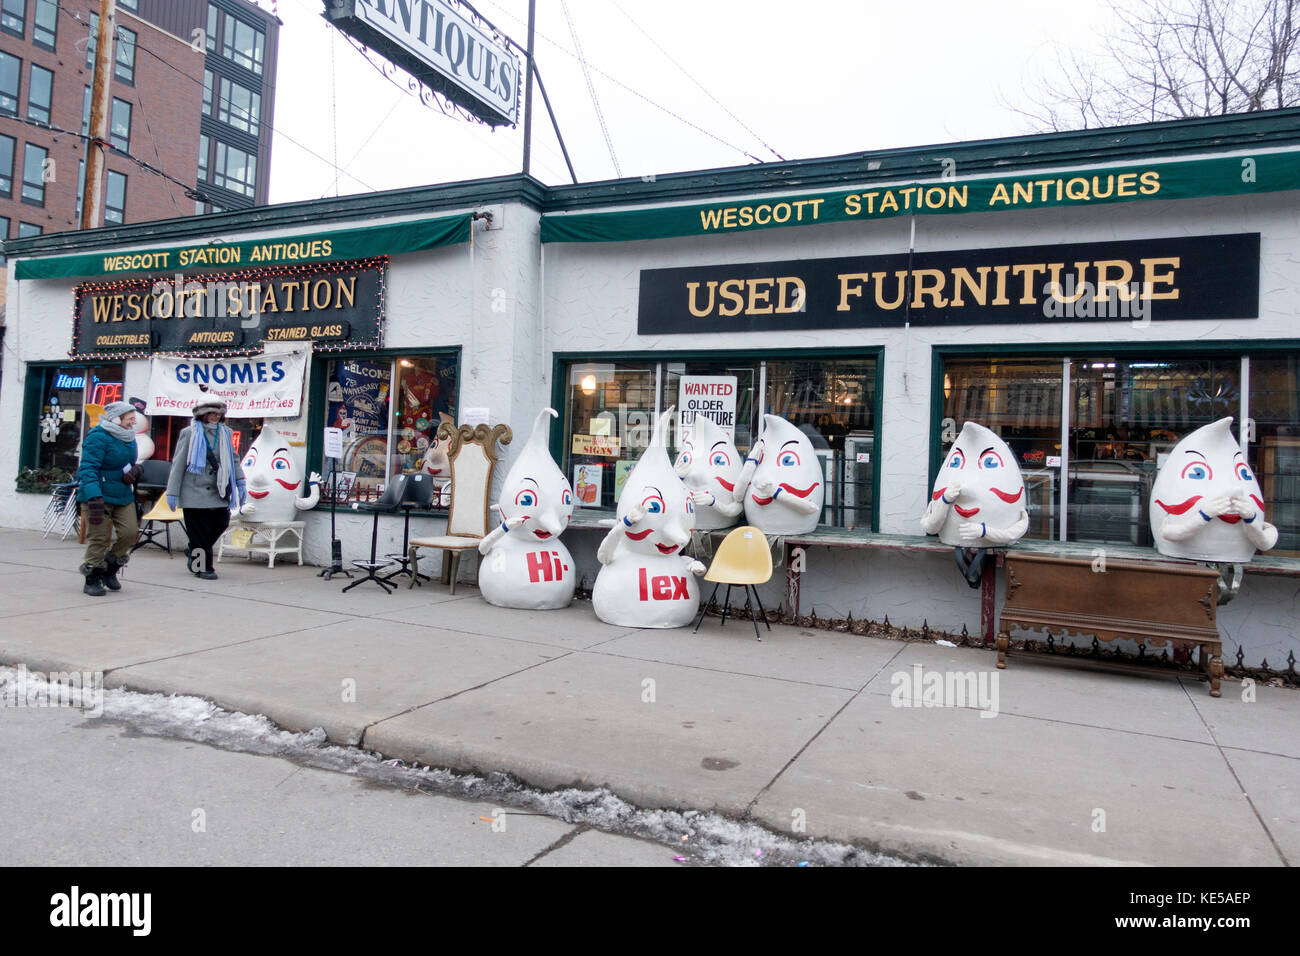 Hi Lex Gnomes Ausserhalb Der Wescott Station Antique Store Auf West